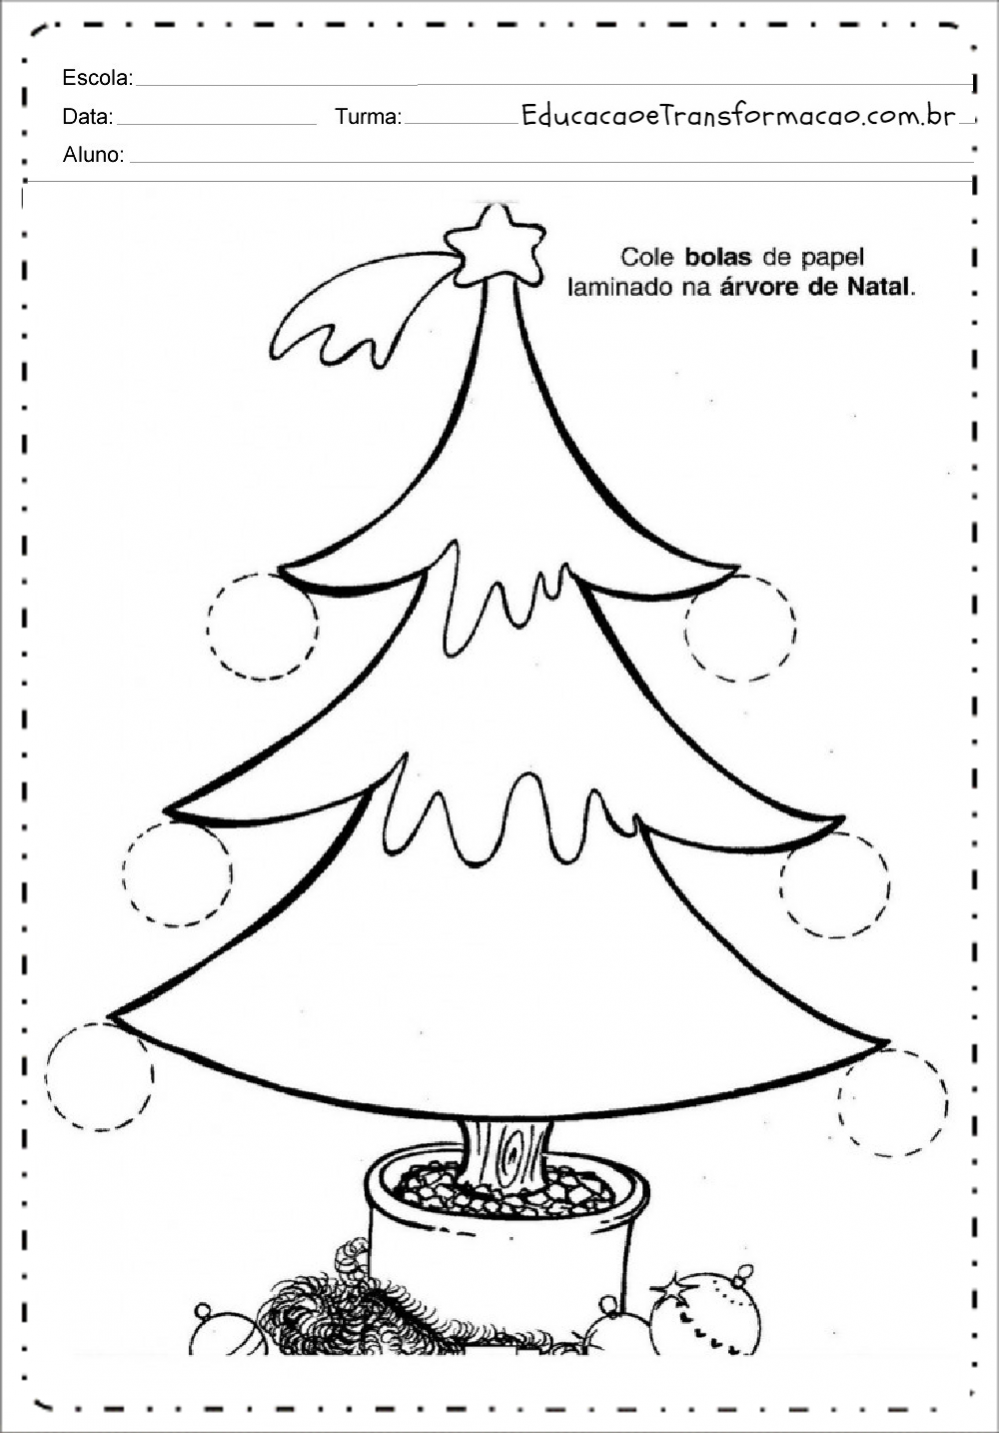 Recorte e Cole - Atividades de Natal. – Educação e Transformação